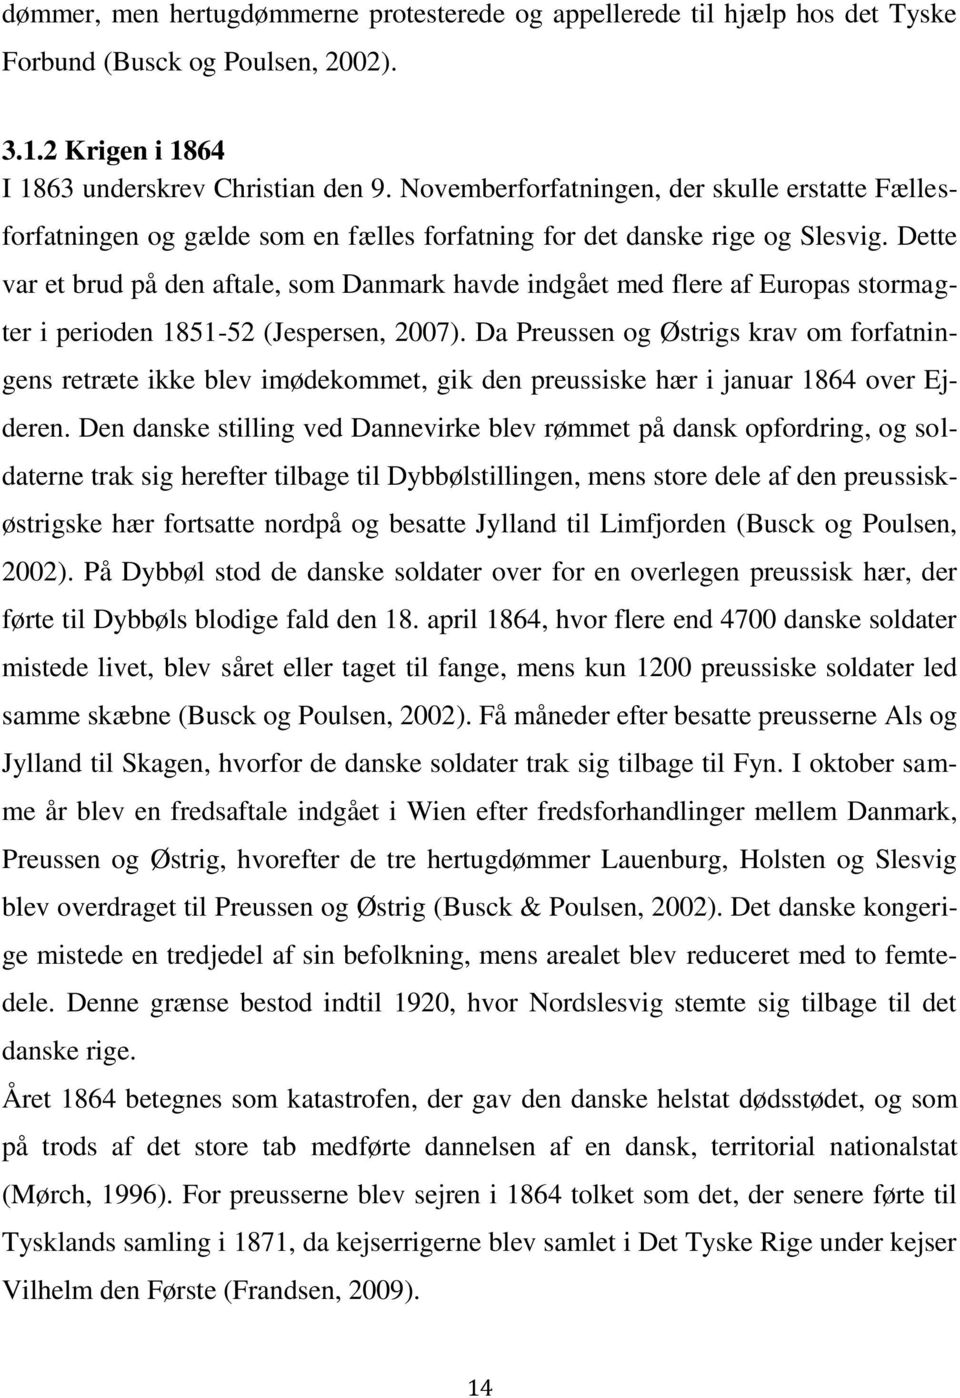 Dette var et brud på den aftale, som Danmark havde indgået med flere af Europas stormagter i perioden 1851-52 (Jespersen, 2007).